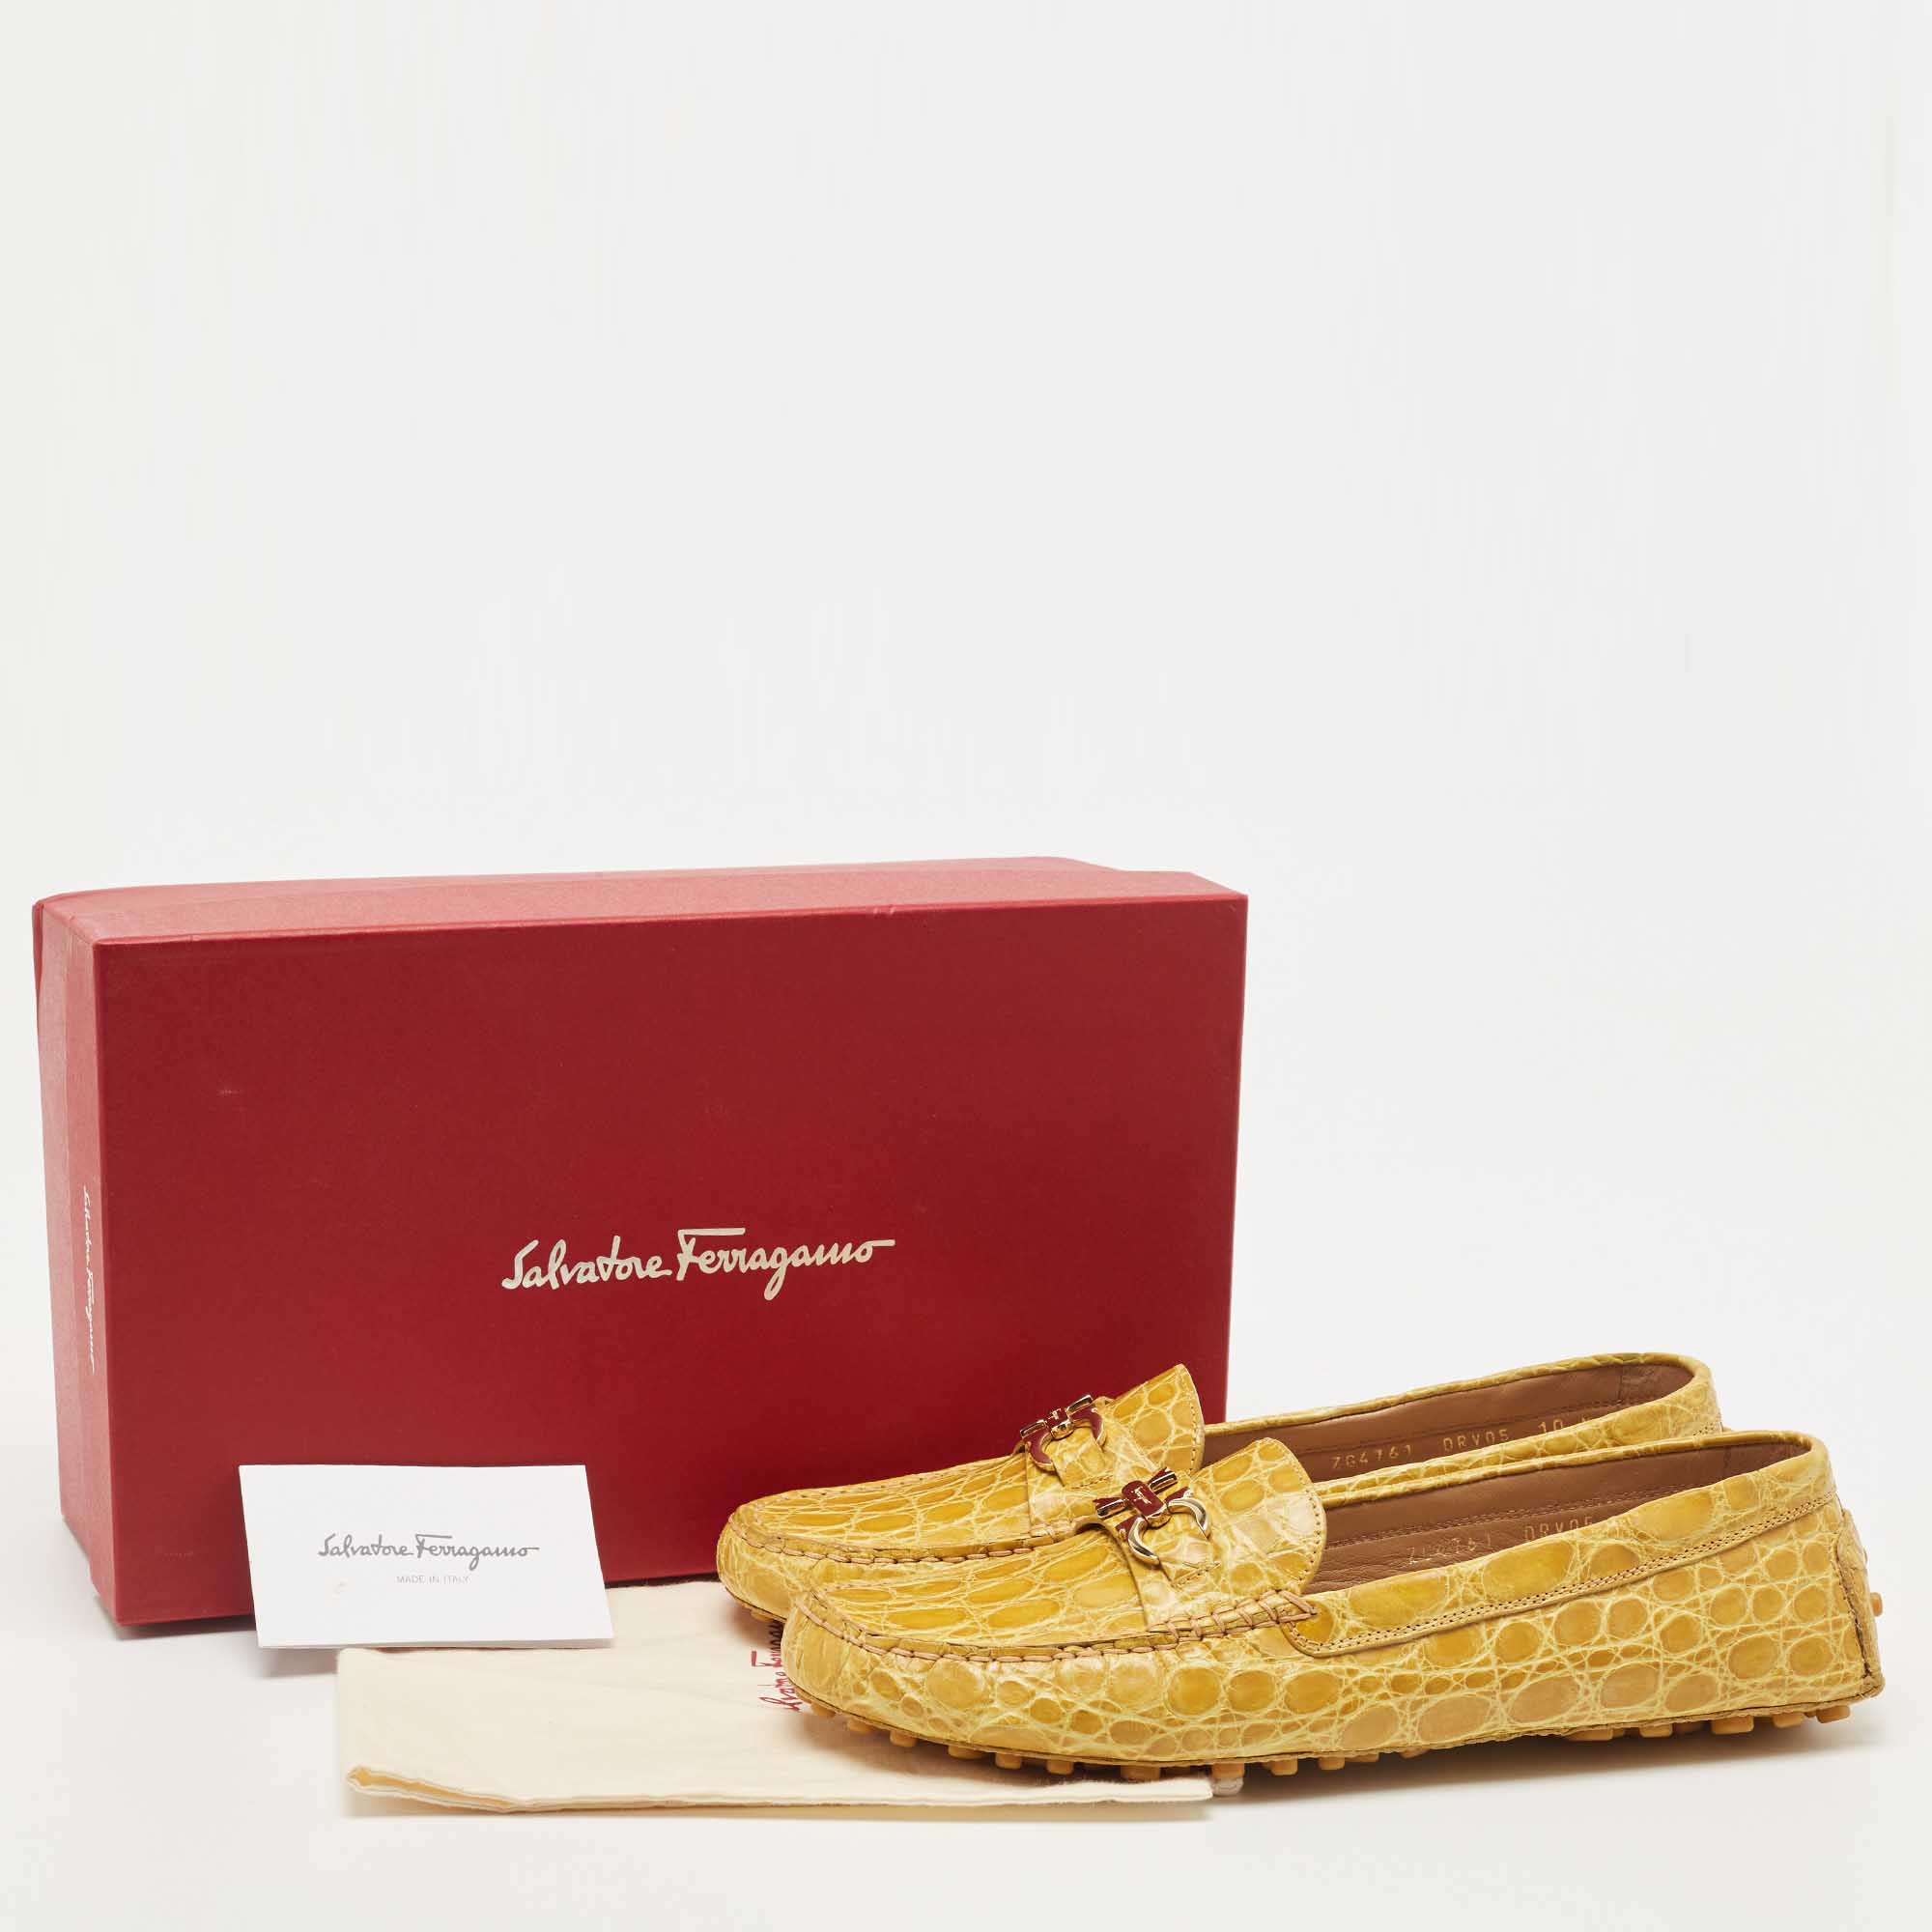 Salvatore Ferragamo Yellow Crocodile Vera Loafers Size 40.5